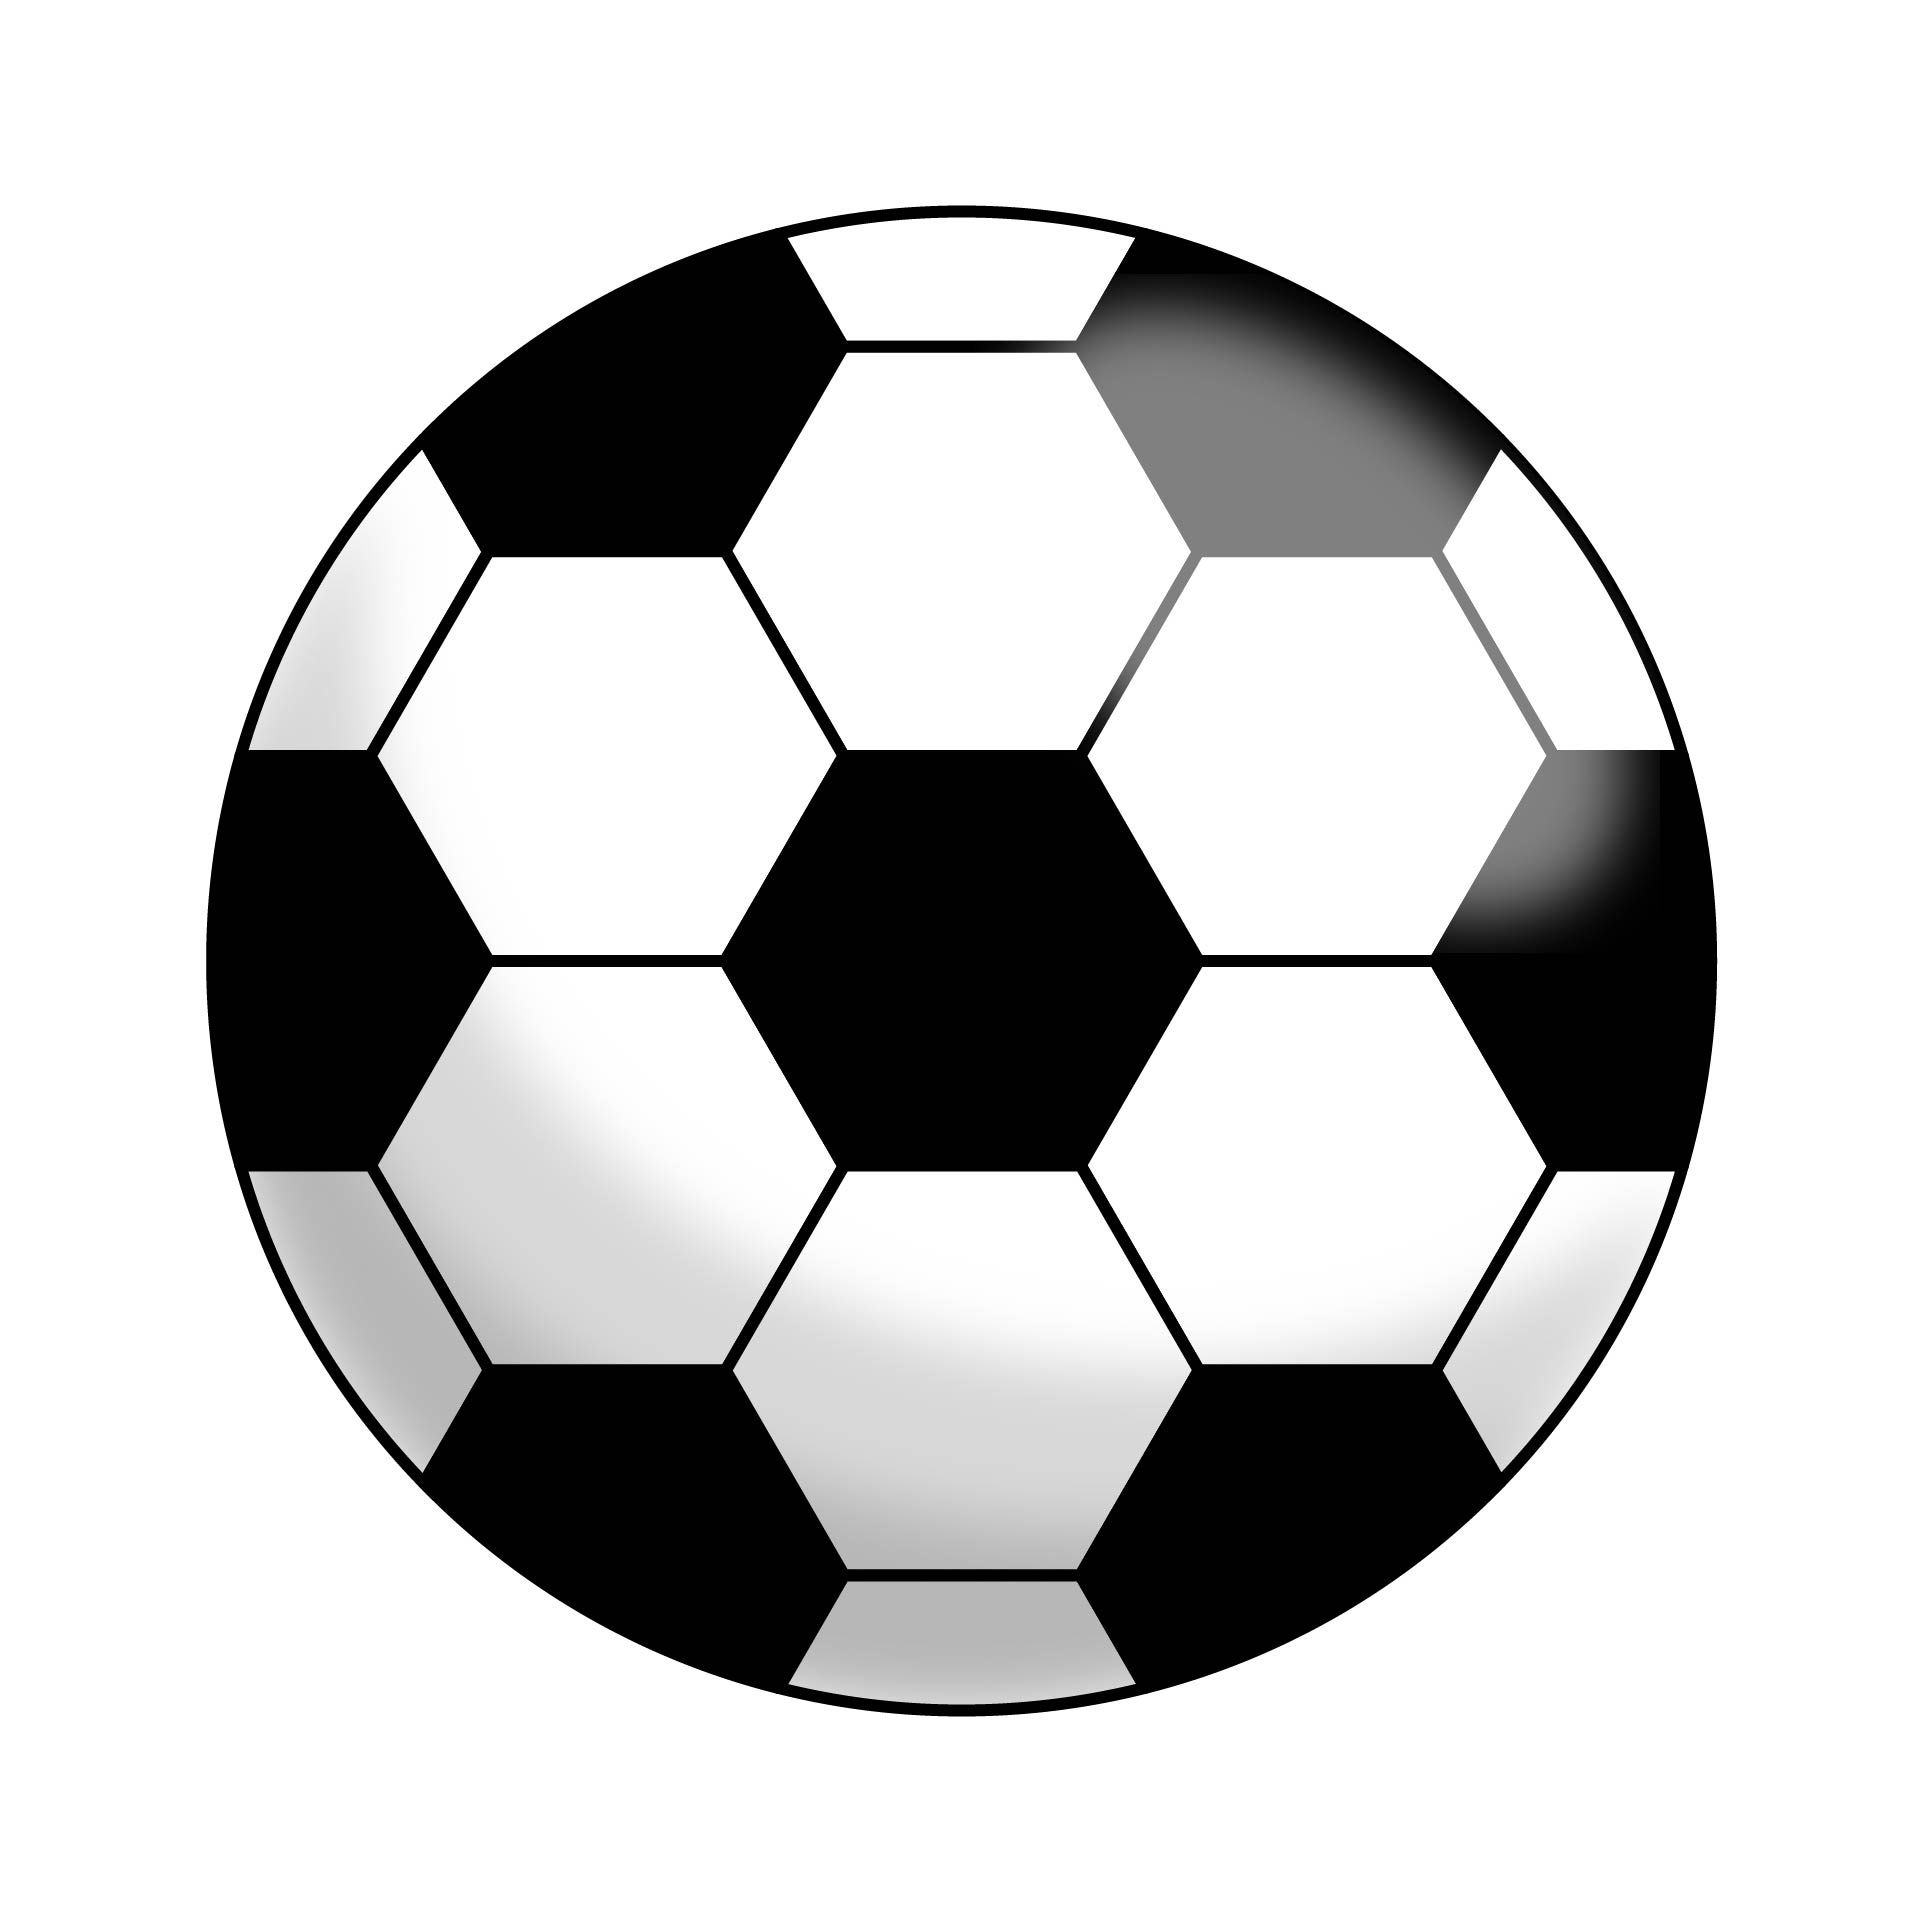 Printable Soccer Ball Template - Free Printable